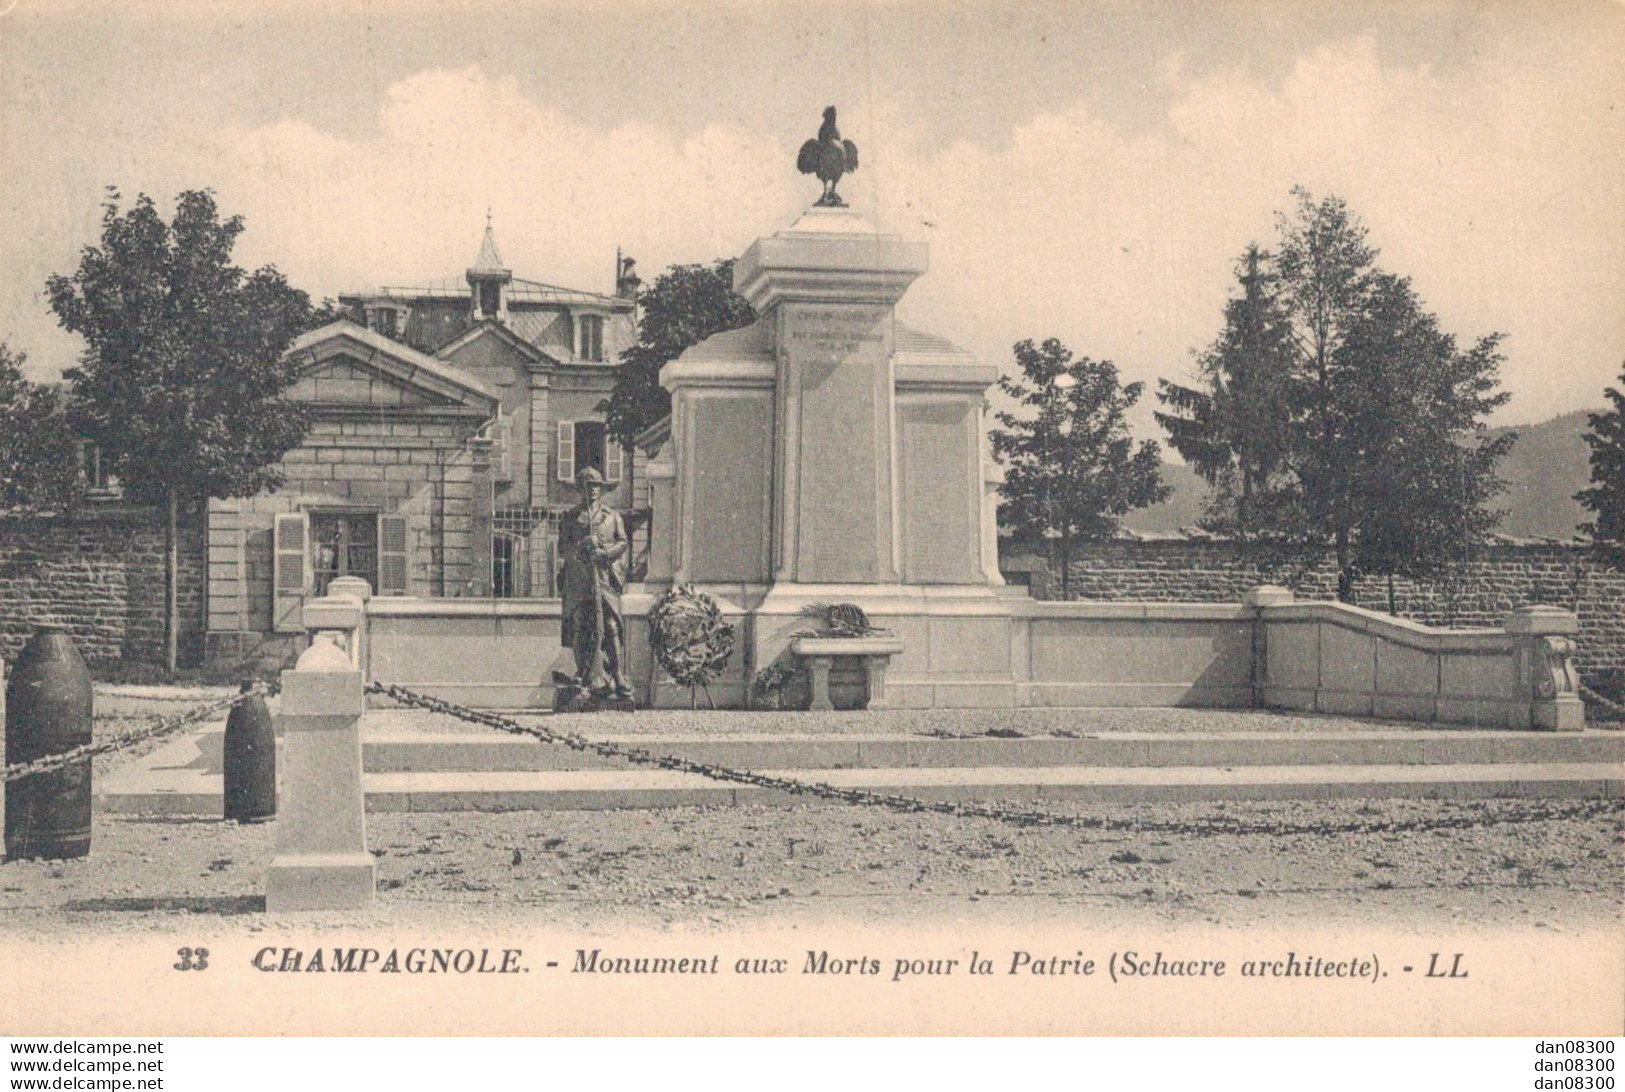 39 CHAMPAGNOLE MONUMENT AUX MORTS POUR LA PATRIE - War Memorials